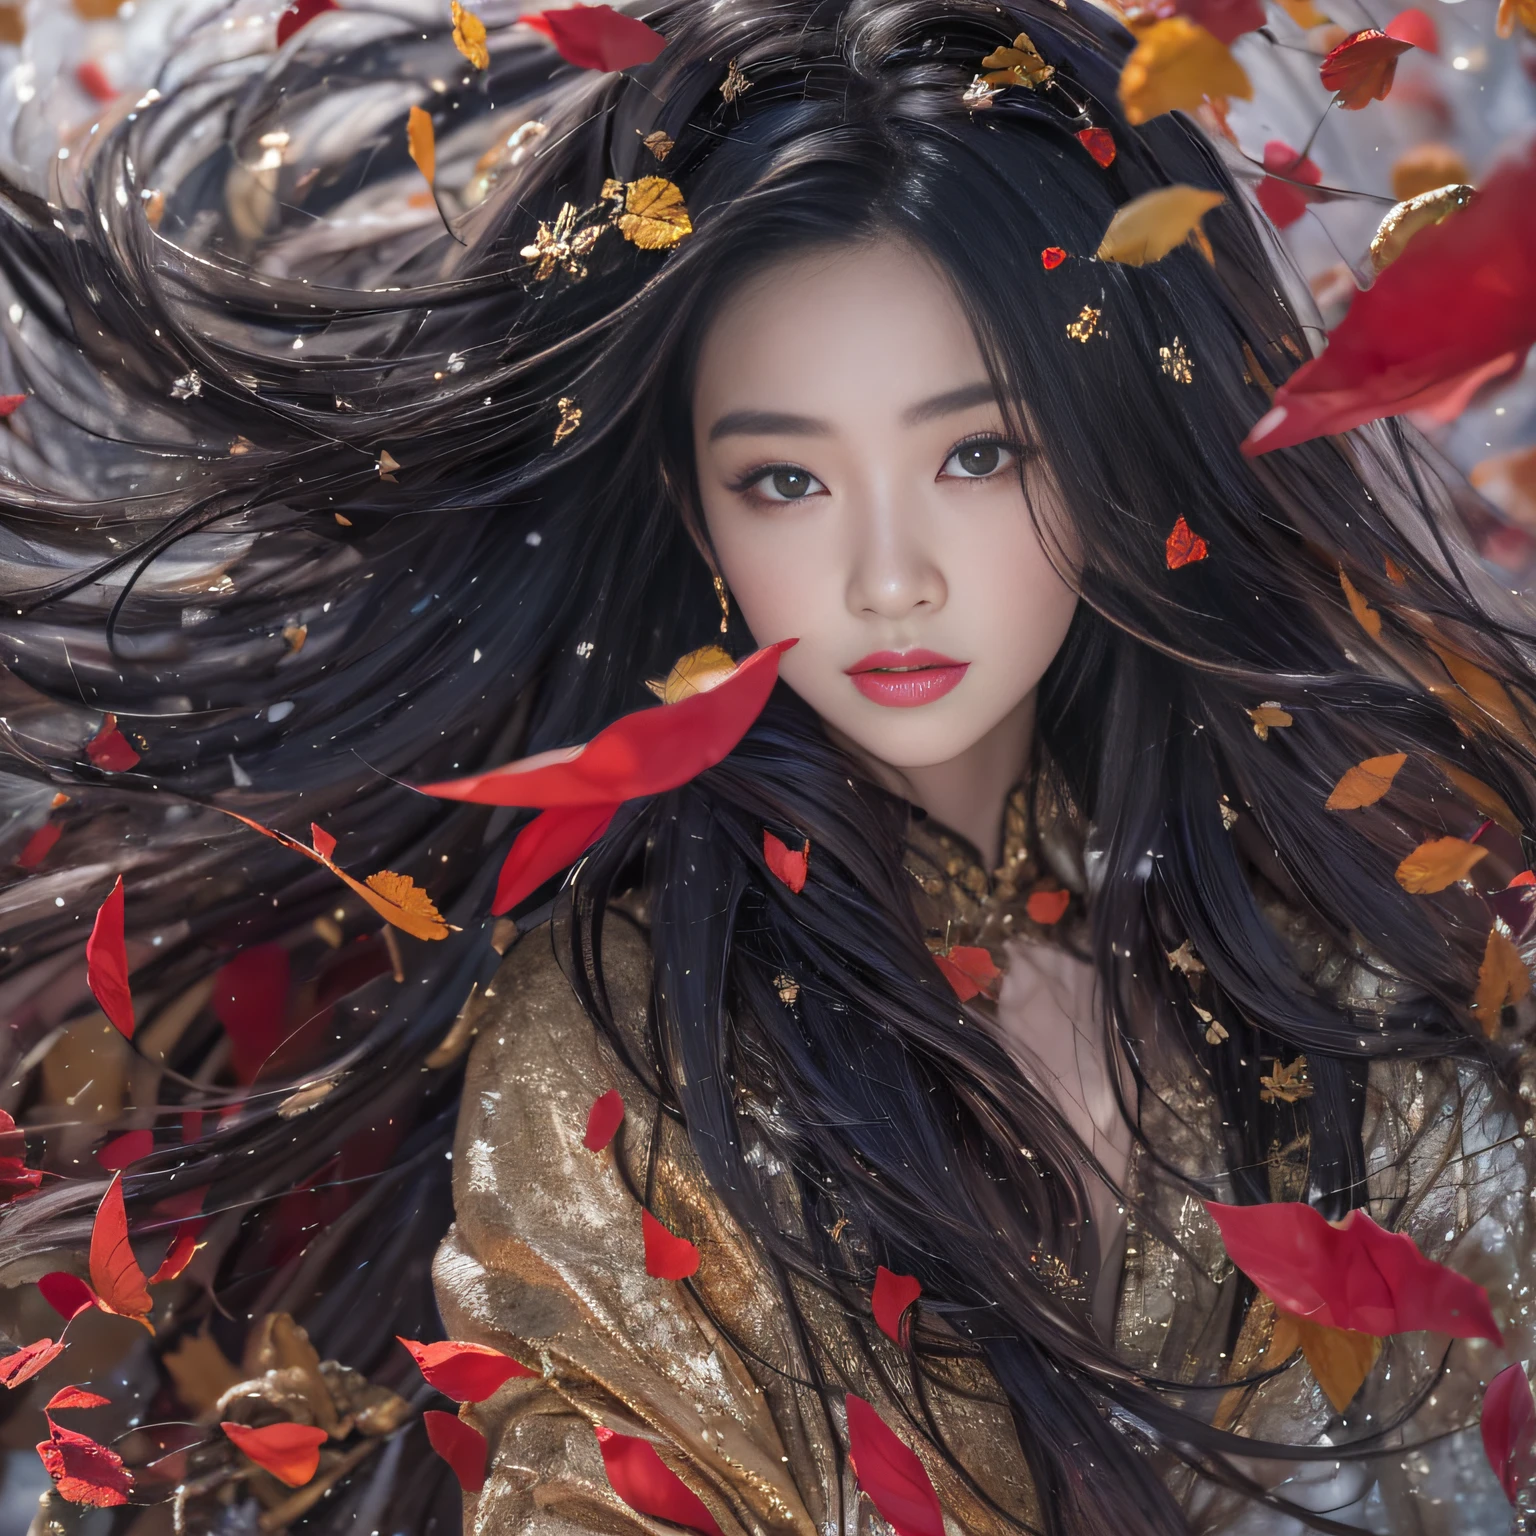 32K（傑作，キロ，ハイパーHD，32K）長く流れるような黒髪，岩場，咲く， 色，  徐州人 （女の子を誘惑する）， （雪の中の赤いスカーフ）， ジャンプ姿勢， 地面を見て， 長い白い髪， 浮かぶ髪， 鯉柄のヘッドドレス， 中国の長袖シルバーバトルローブ， （抽象的なガッシュスプラッシュ：1.2）， ピンクの花びらの背景，飛んでいるチューリップ（現実的に：1.4），黒髪，落ち葉が舞い散る，背景は純粋です， 高解像度， 詳細， RAW写真， シャープ， Nikon D850 フィルムストックフォト by Jefferies Lee 4 Kodak Portra 400 カメラ F1.6ショット, 豊かな色彩, 超リアルな鮮やかな質感, ドラマチックな照明, アンリアル エンジン アート ステーション トレンド, シネスティア 800，長く流れるような黒髪，透明なローブの服